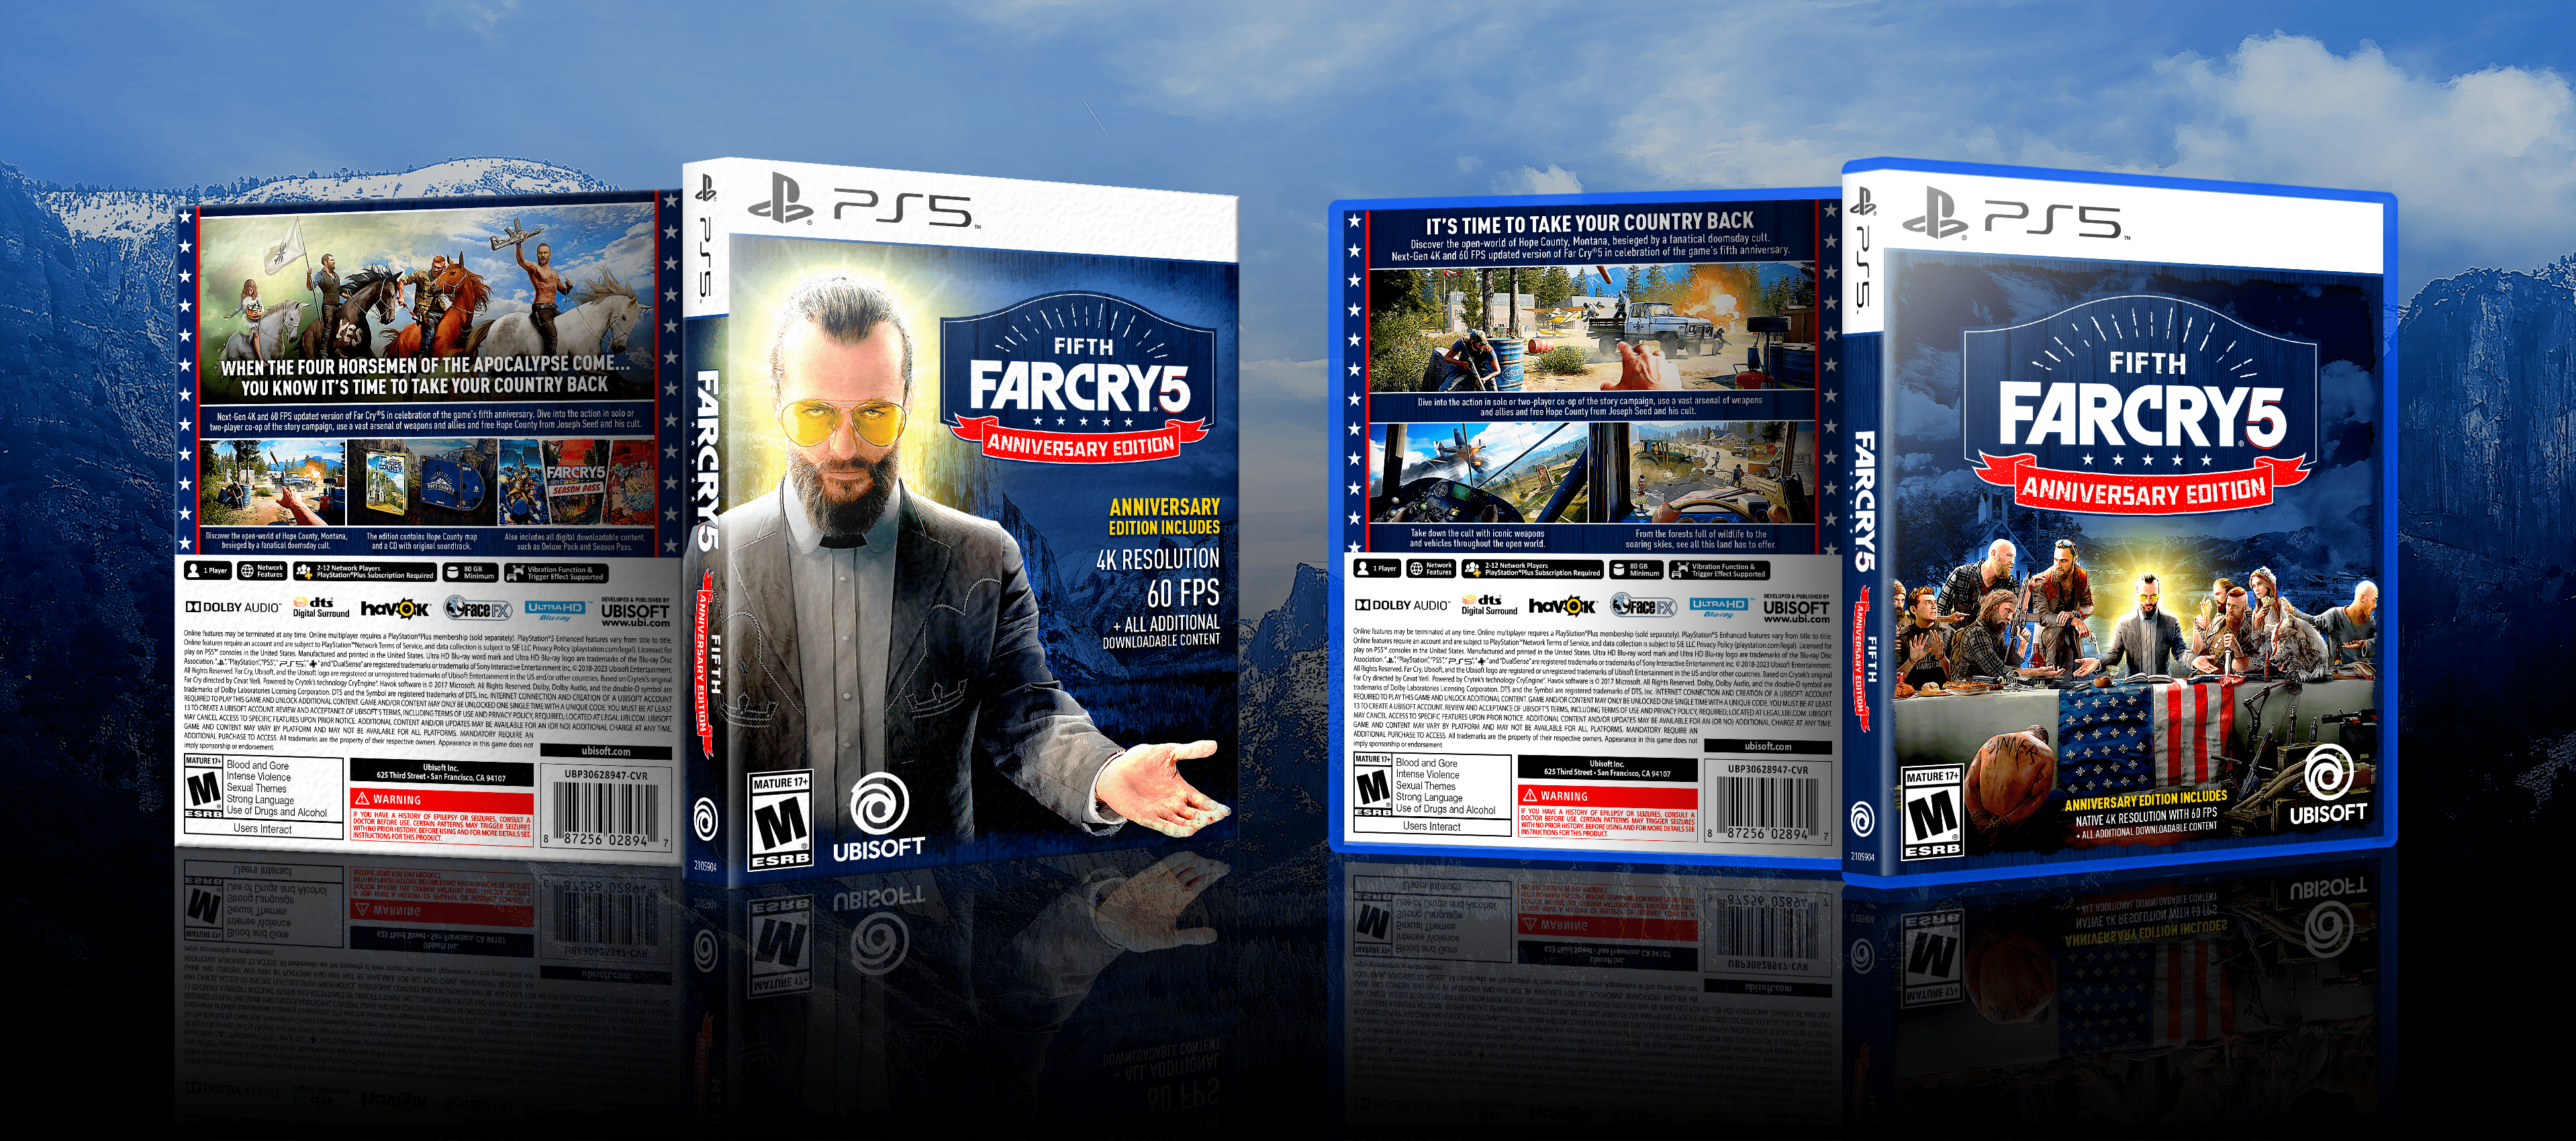 FarCry 5: Fifth Anniversary Edition box cover